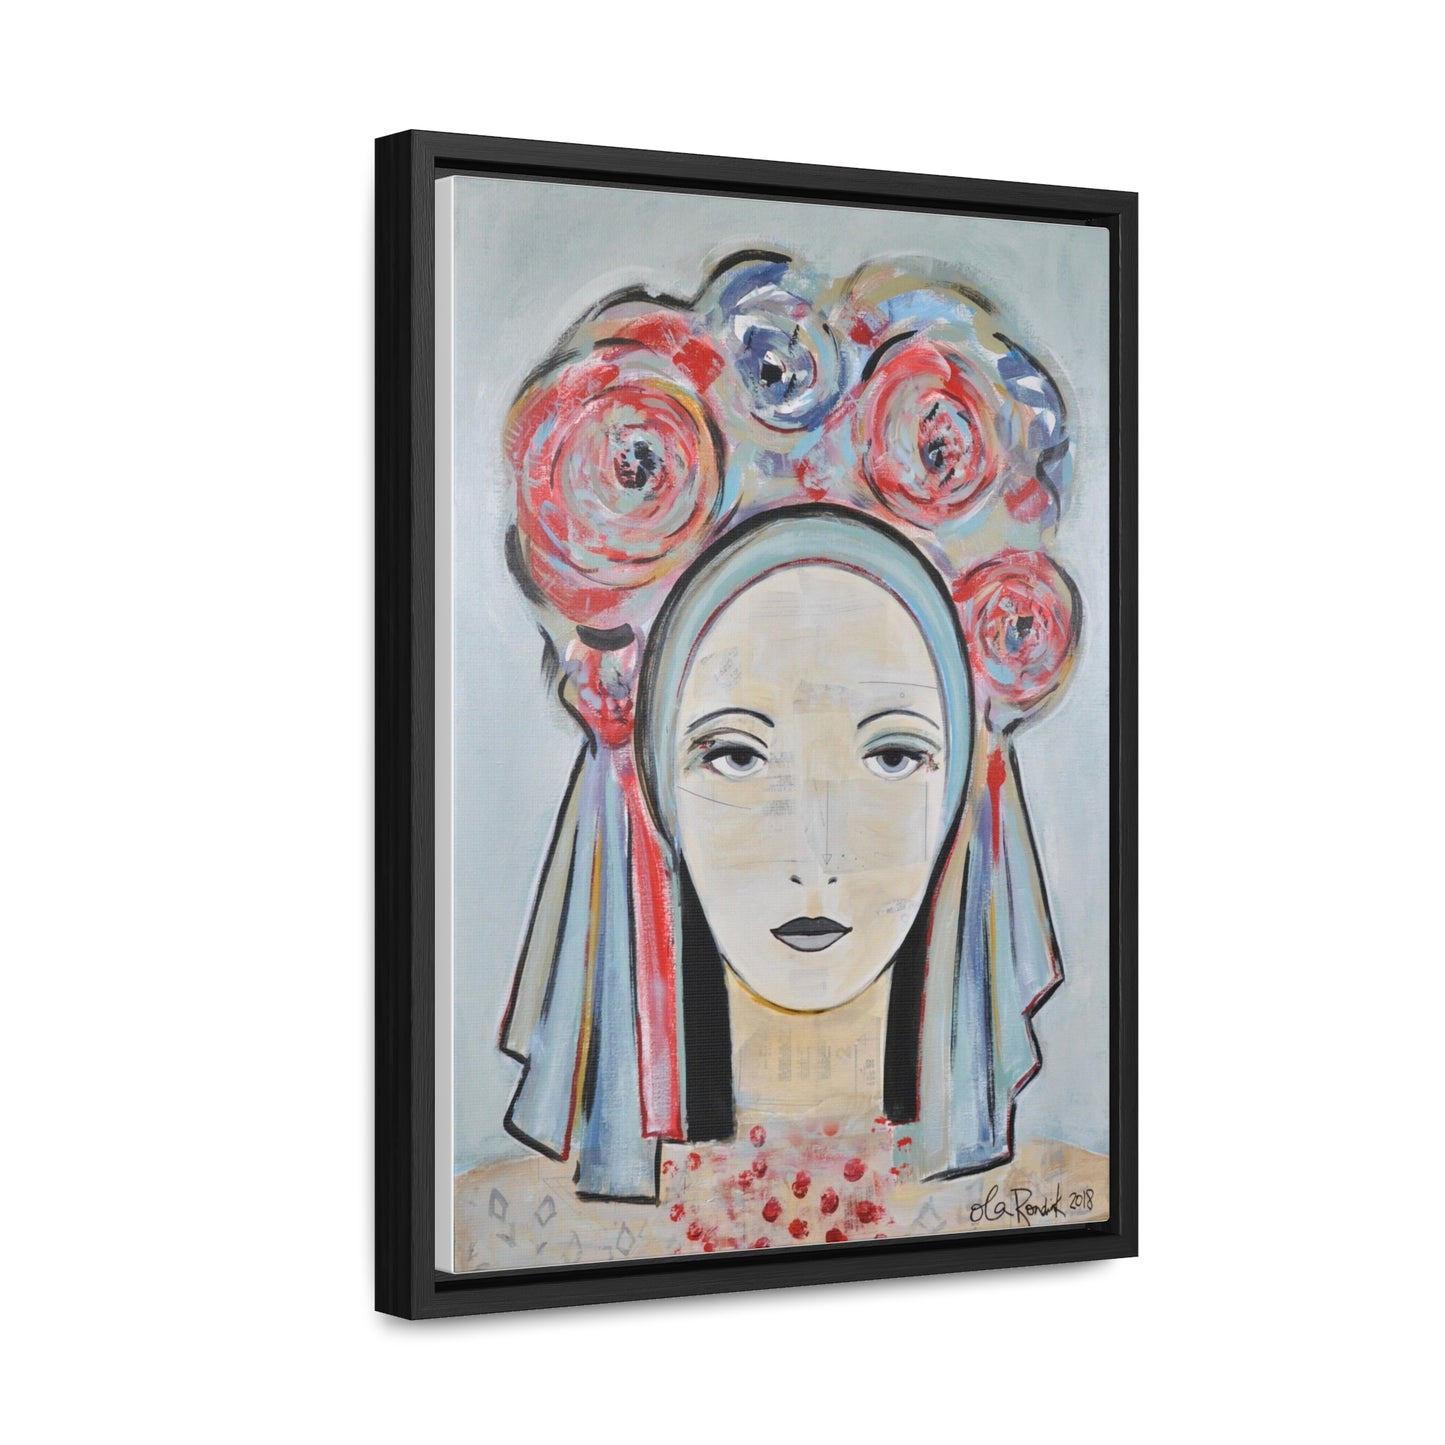 Vinok in Pastel - Gallery Canvas Wrap in Floating Frame